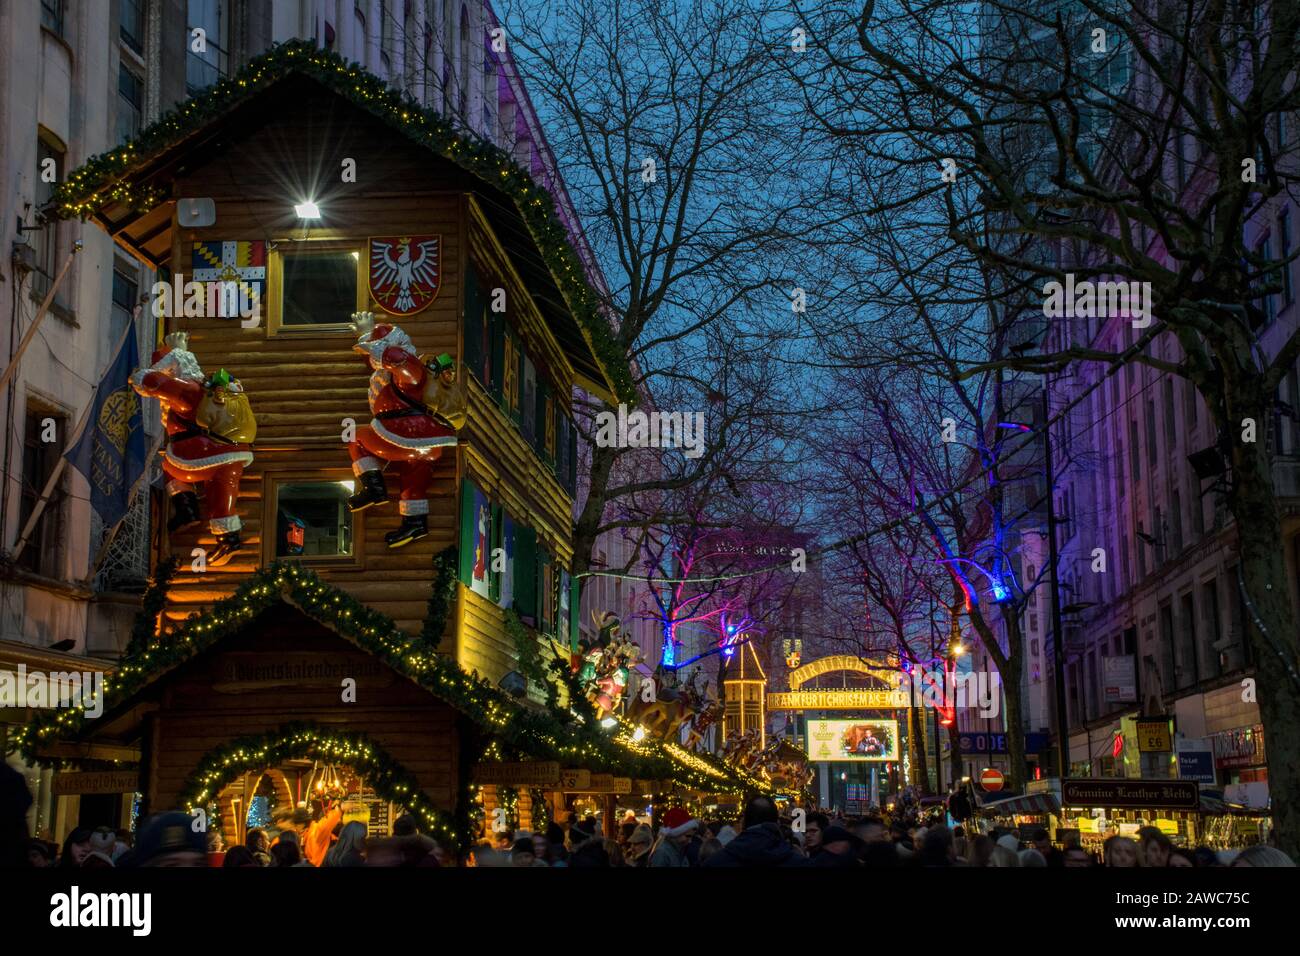 Shopping de Noël sur le marché de noël du soir, Birmingham Royaume-Uni Banque D'Images